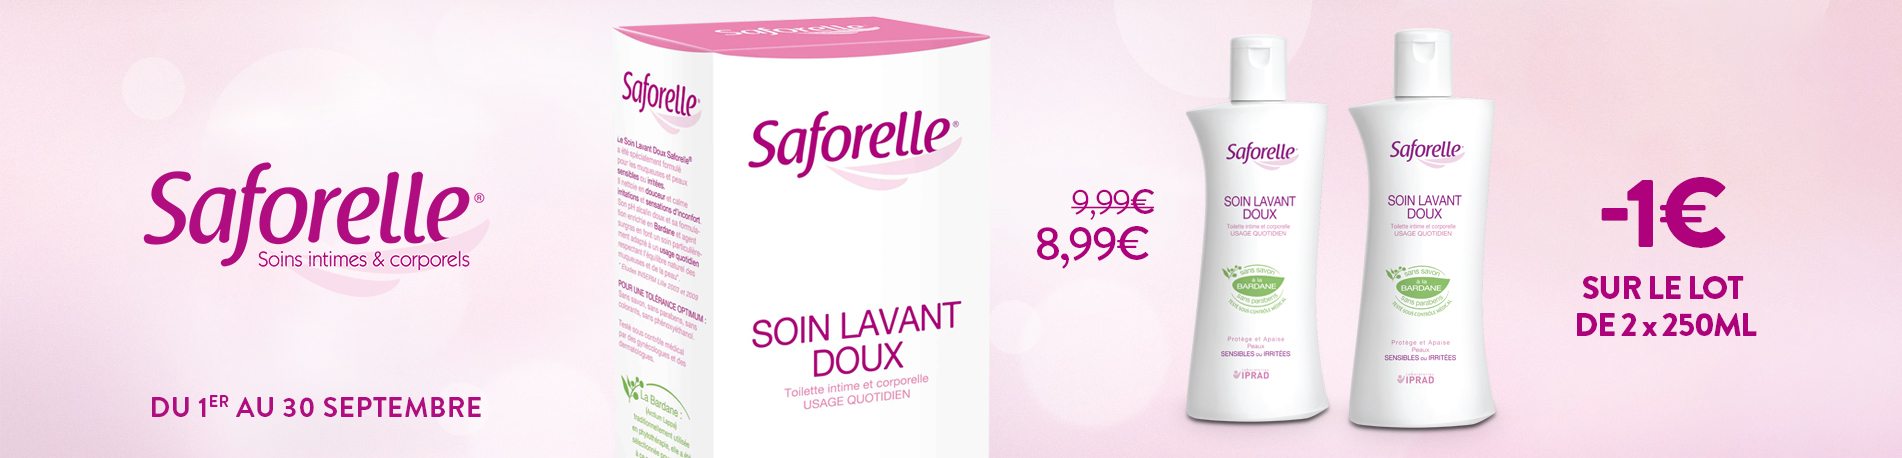 Promotion Saforelle Soin lavant doux 2x250ml